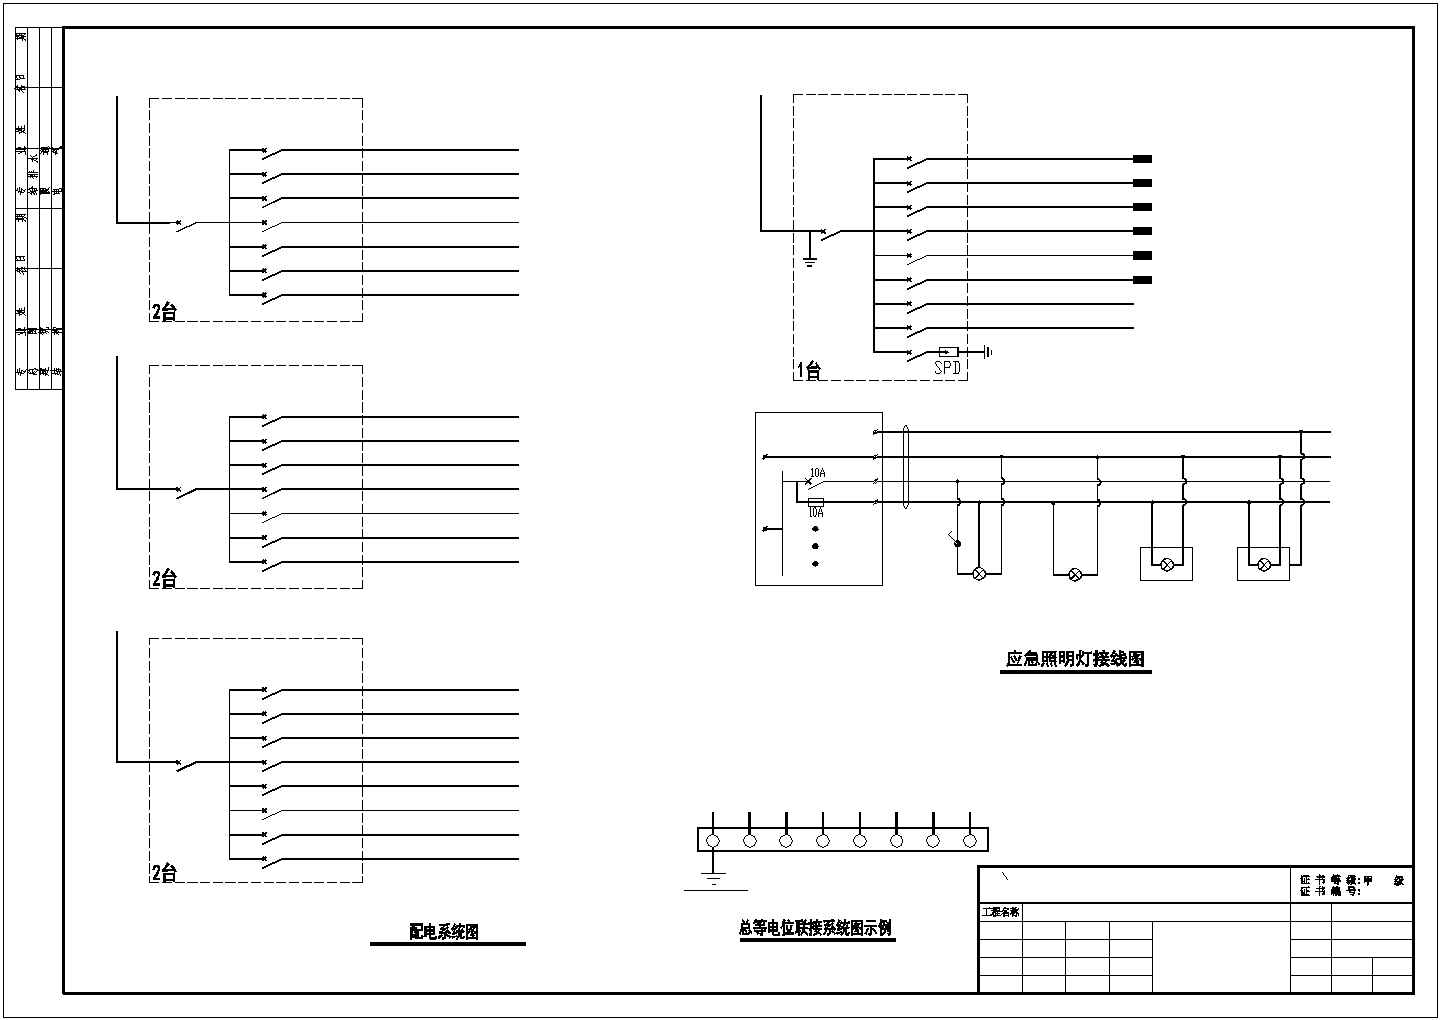 厂房设计_某工厂厂房照明cad平面施工设计图(含配电系统图)